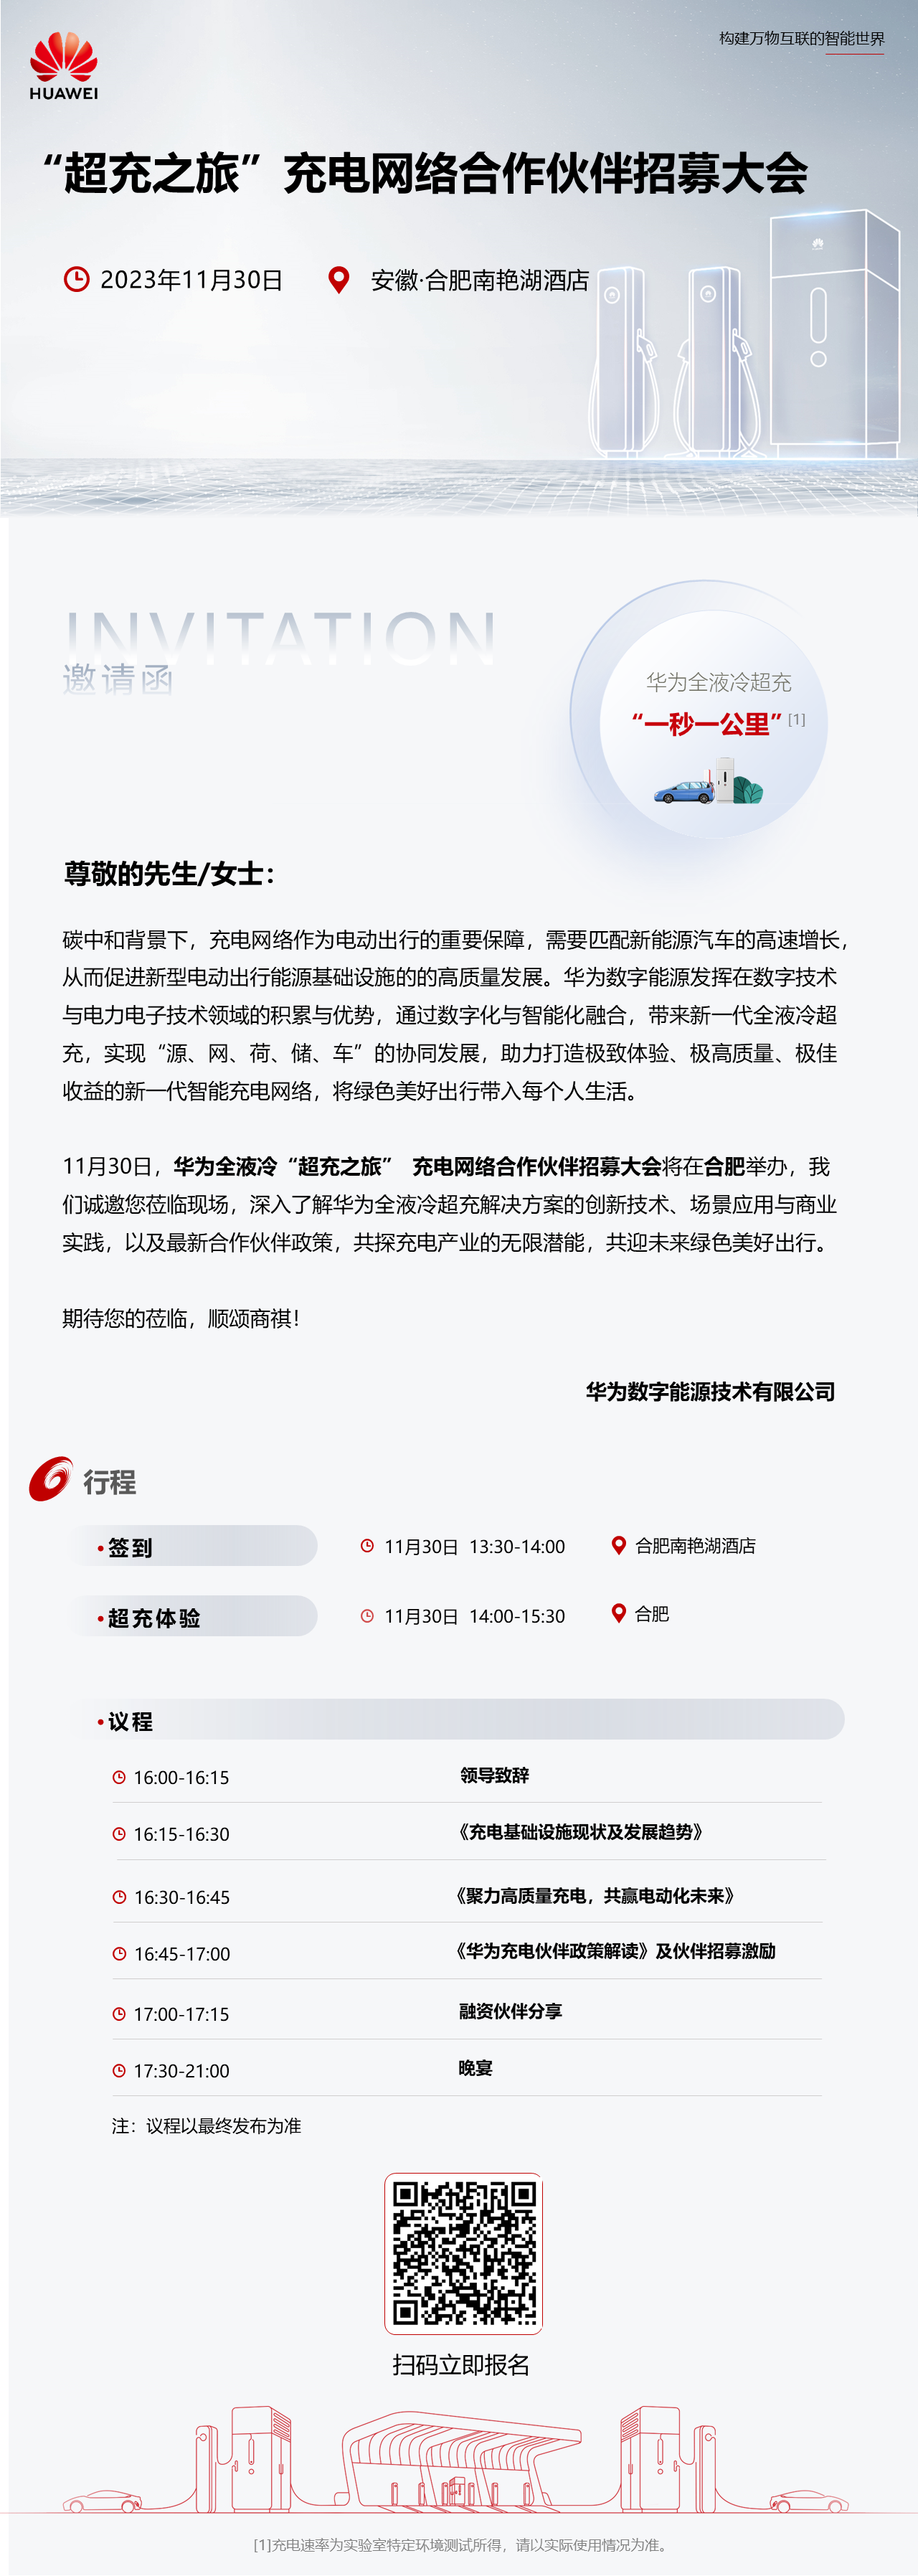 华为安徽“超充之旅”充电网络合作伙伴招募大会火热报名中